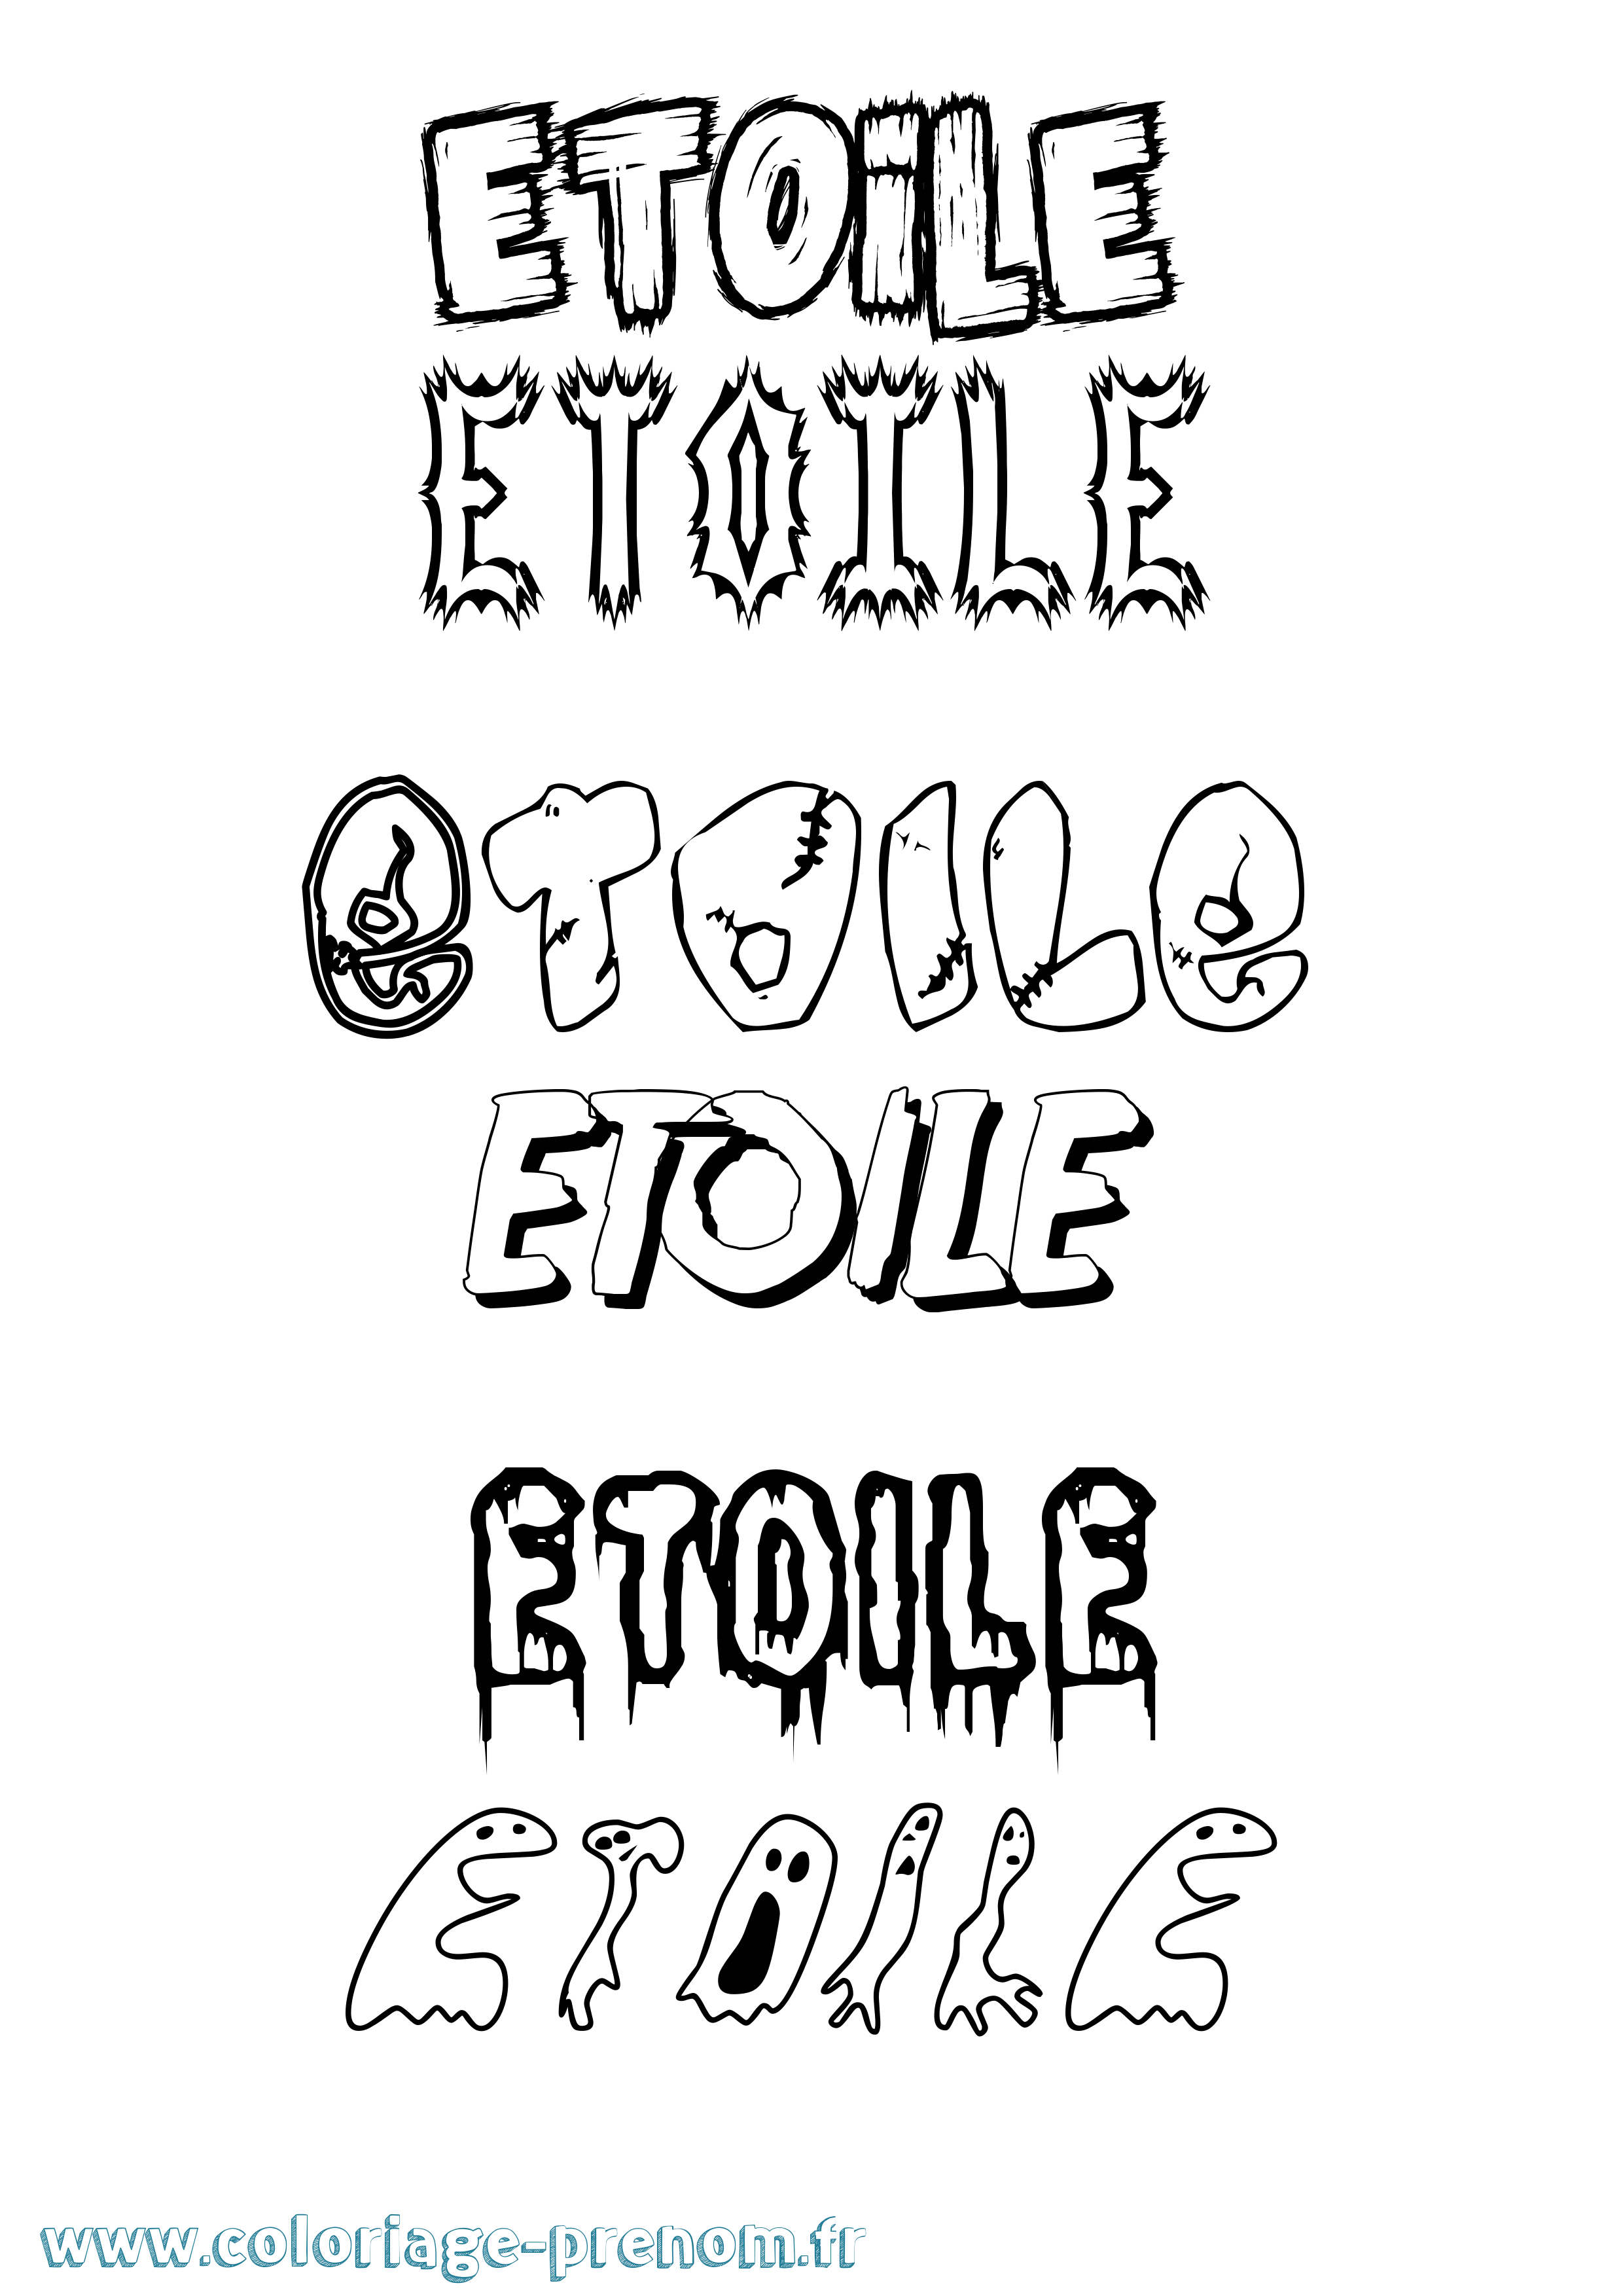 Coloriage prénom Etoile Frisson